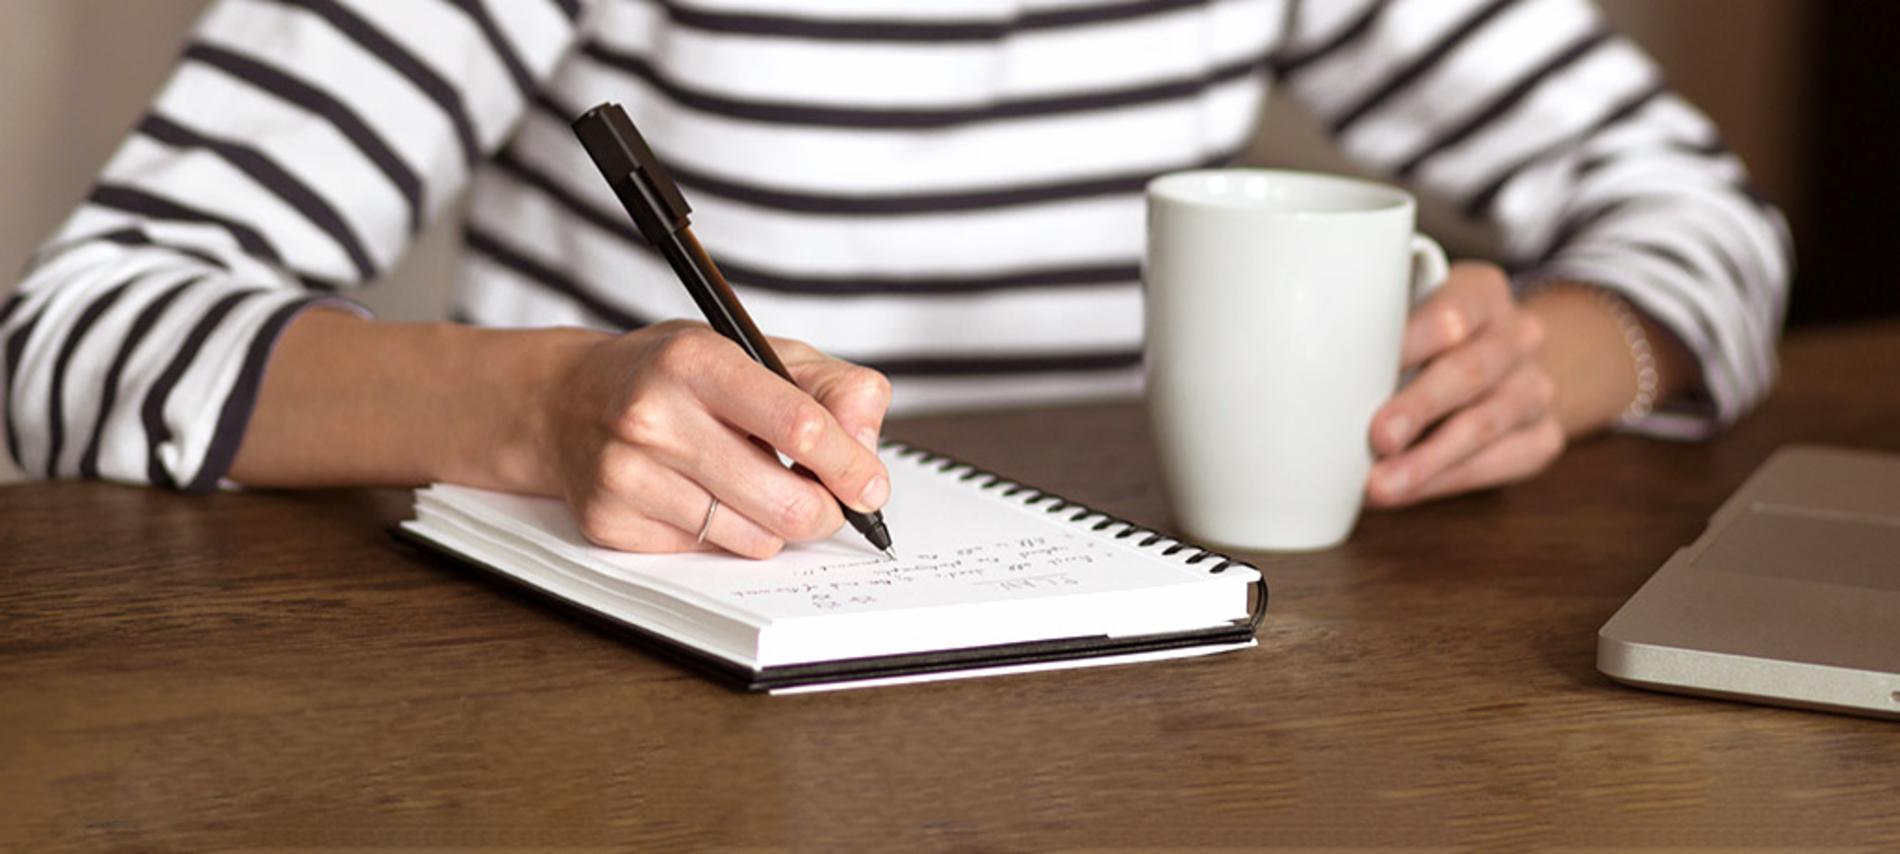 El journaling te ayudará a lidiar con el estrés